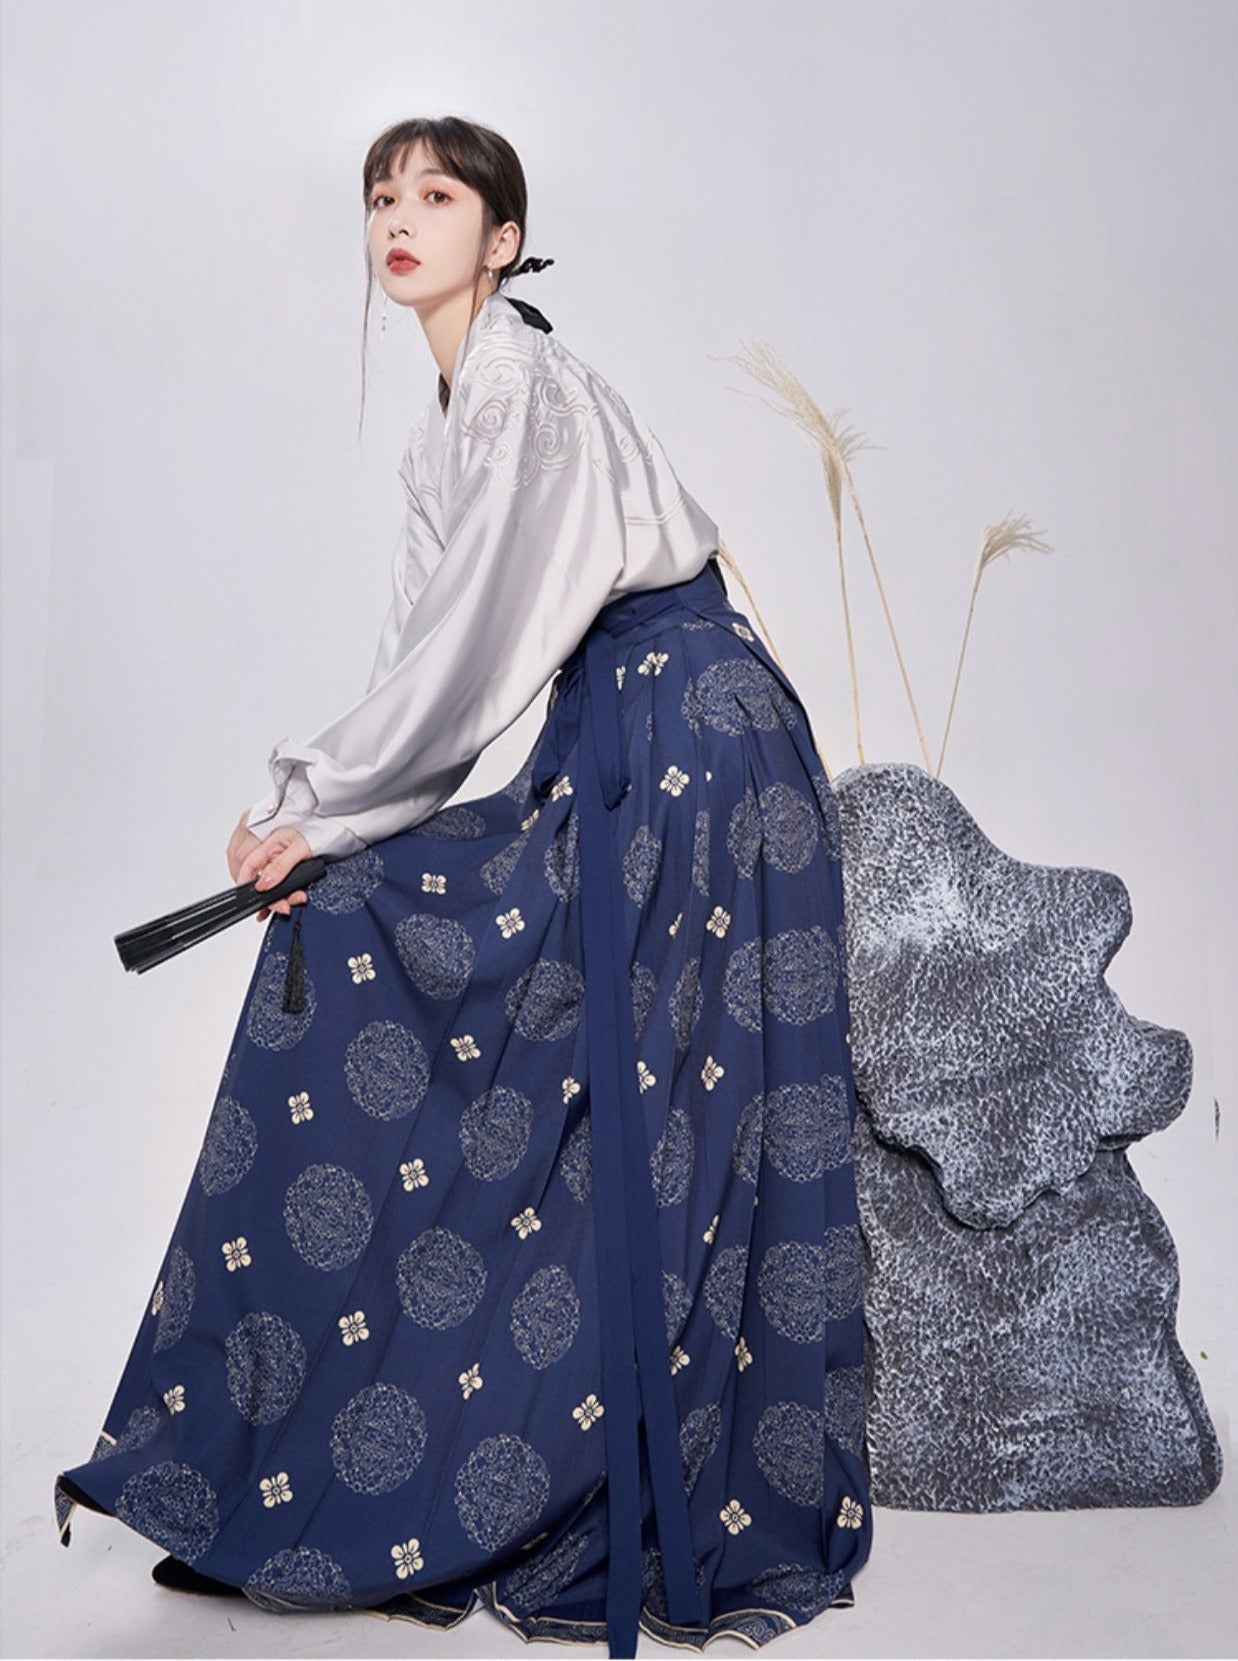 日式图案瓷器上衣 + 复古长裙